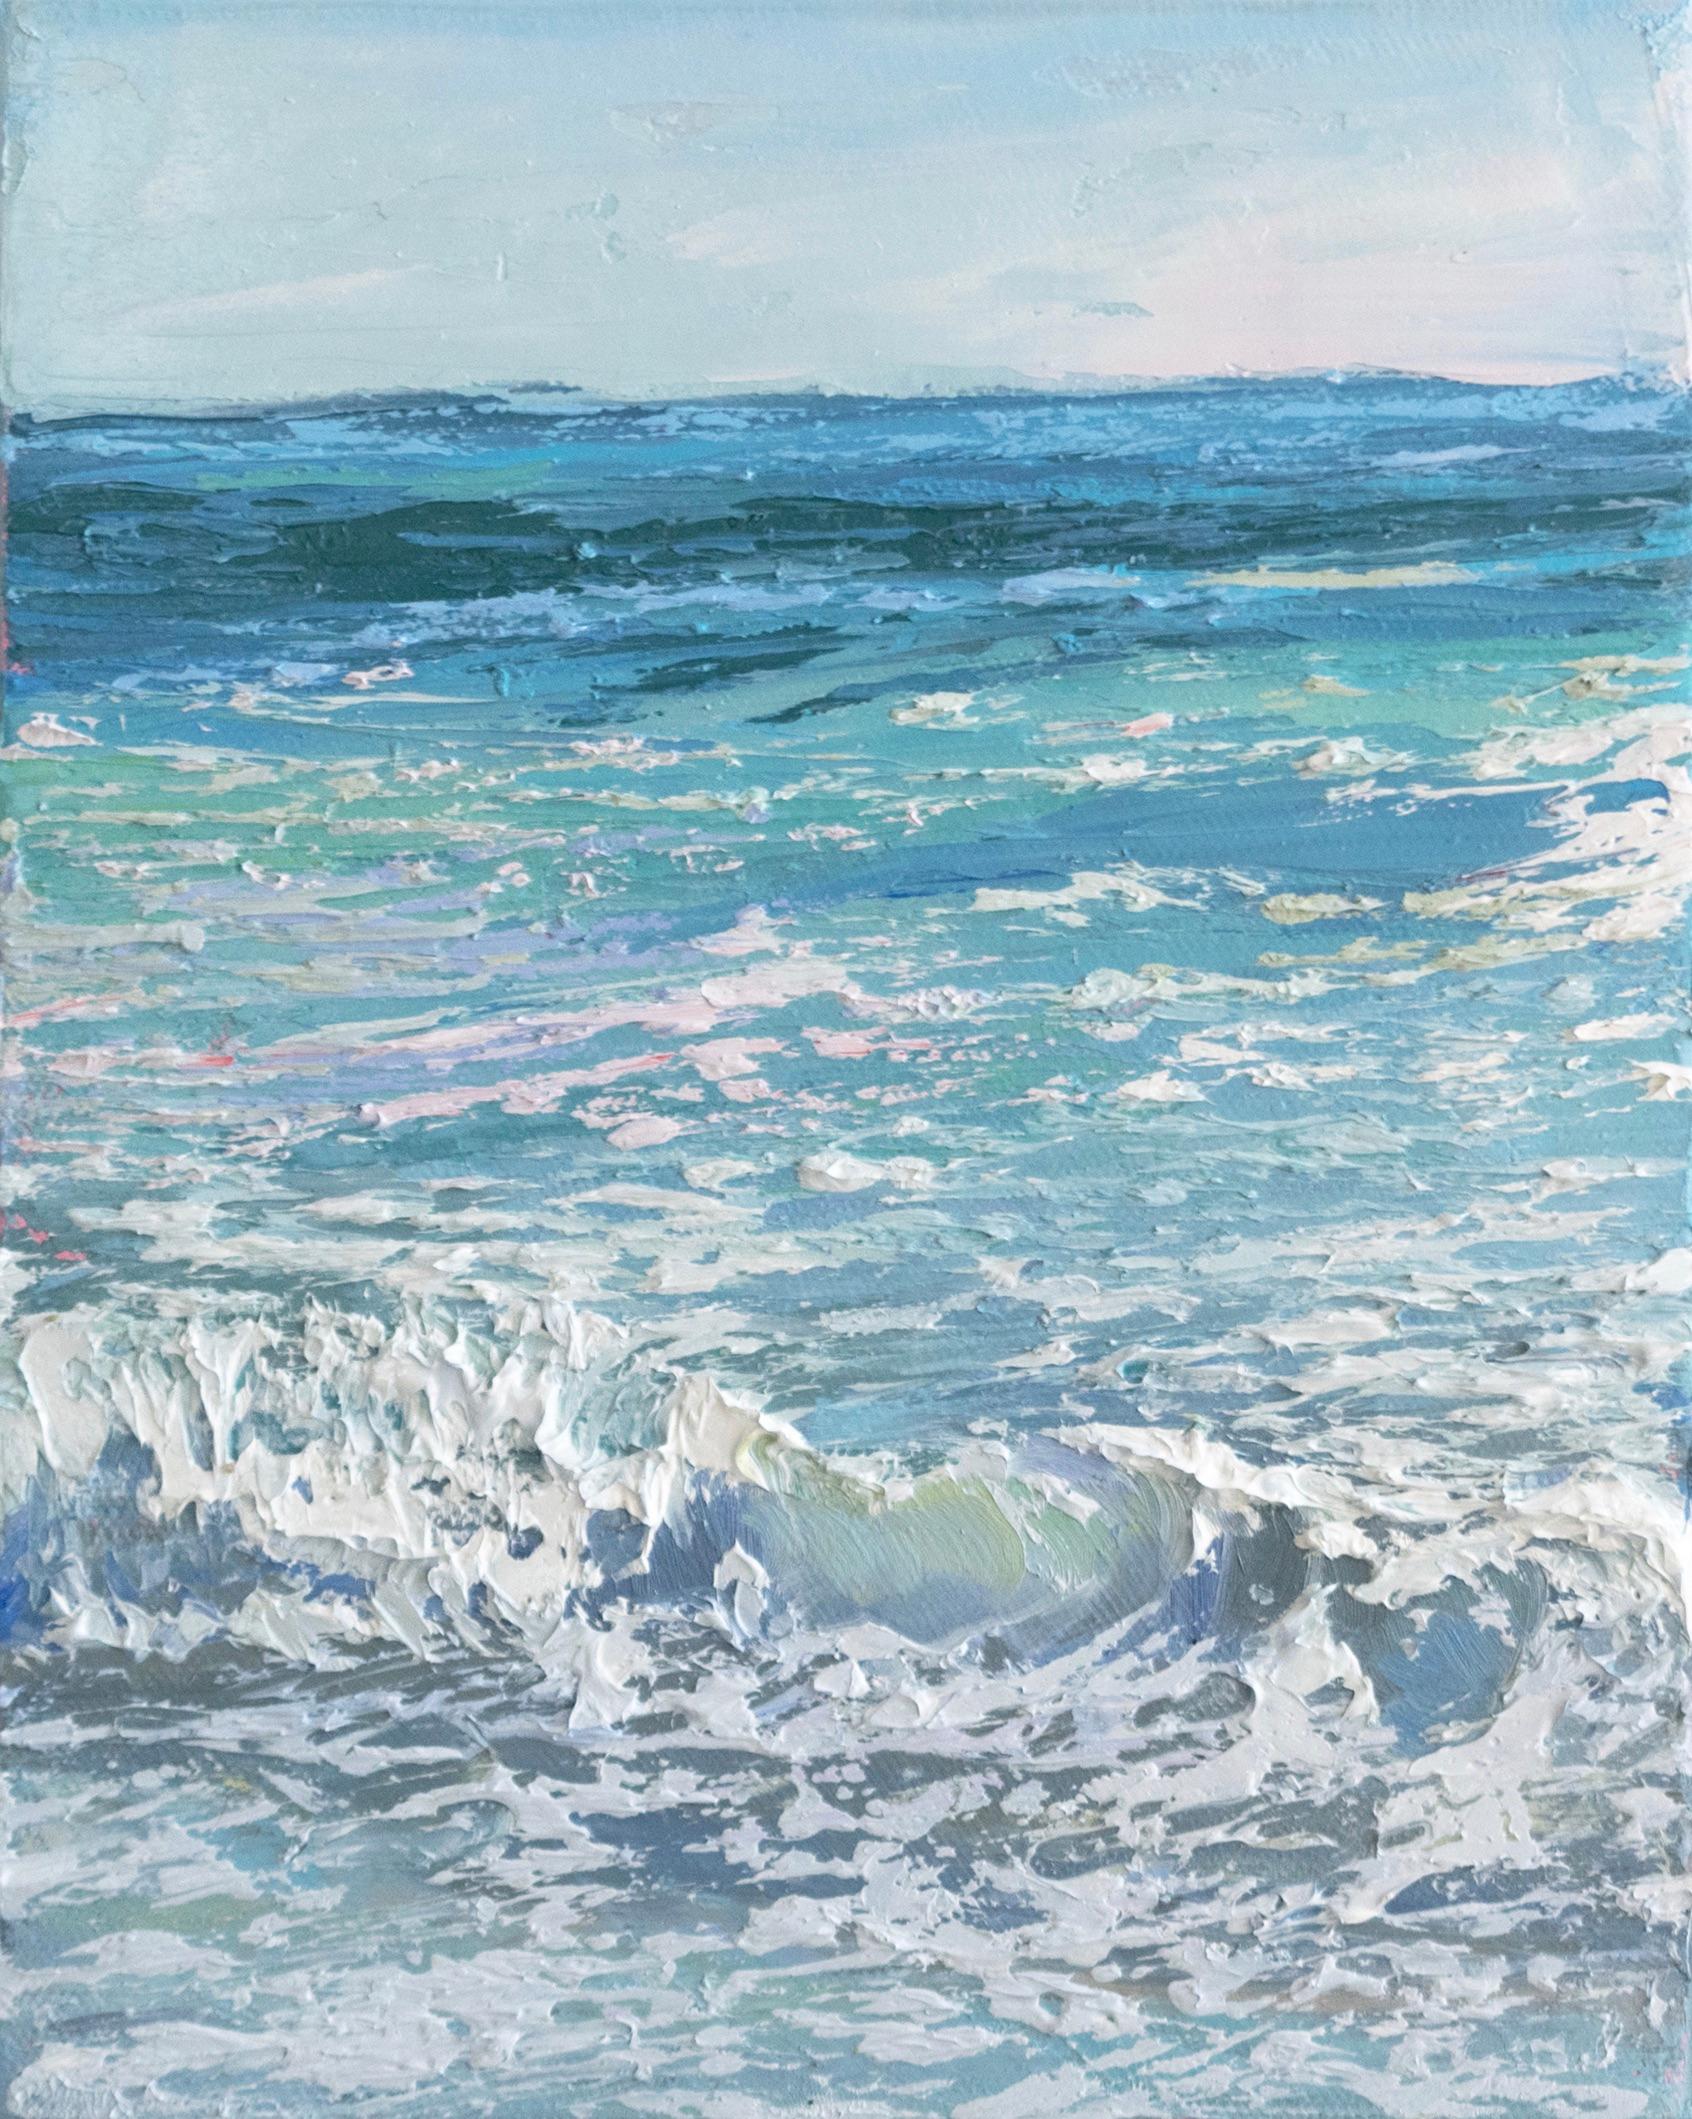 Annie Wildey Landscape Painting – "Crystal Surf I" kleinformatiges Ölgemälde mit blaugrünen Wellen und weißem Meeresschaum